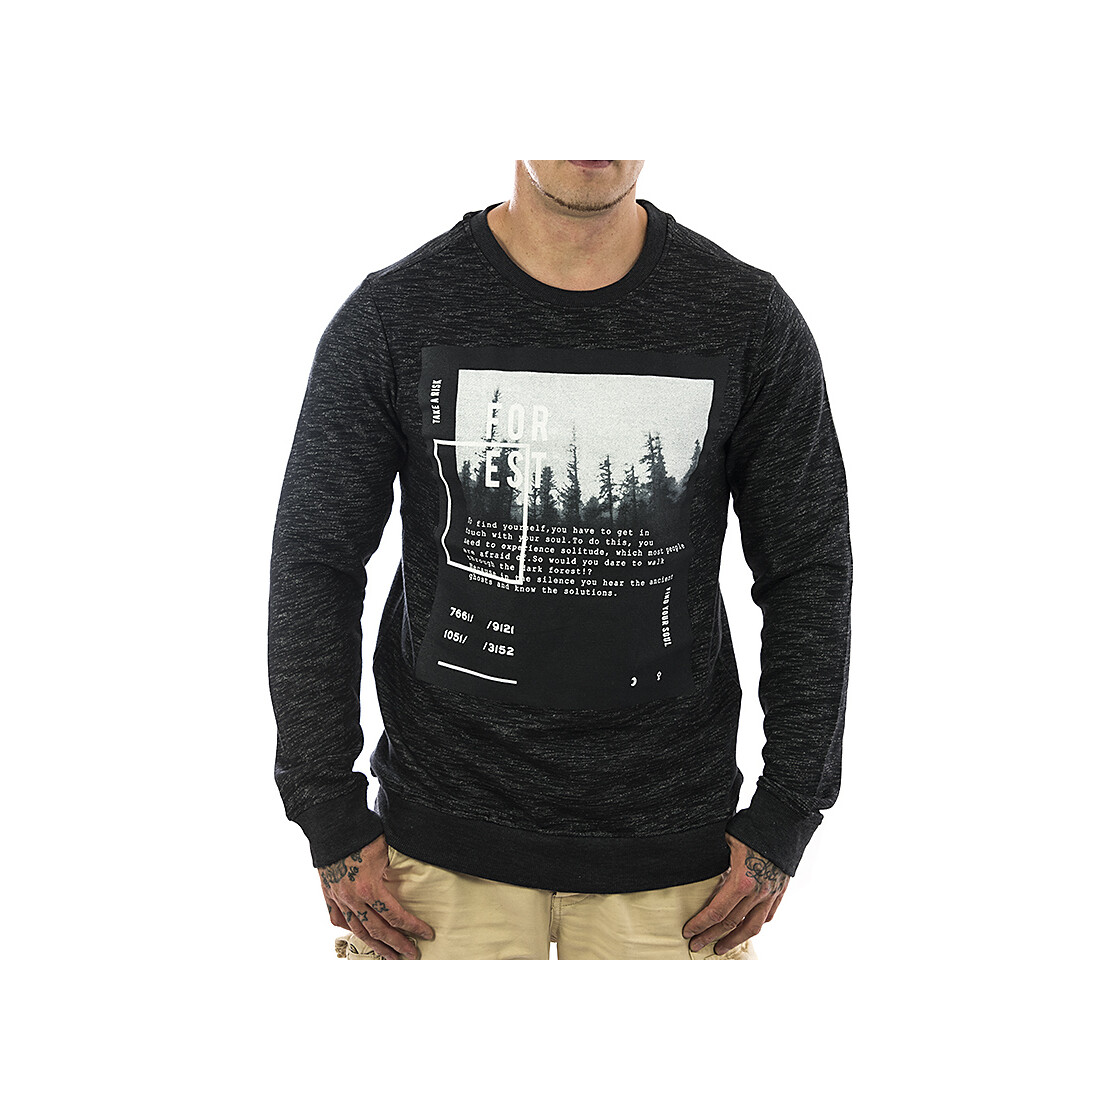 Stitch & Soul Sweatshirt 632 grau NEU Männer Rundhals Sweatshirt 